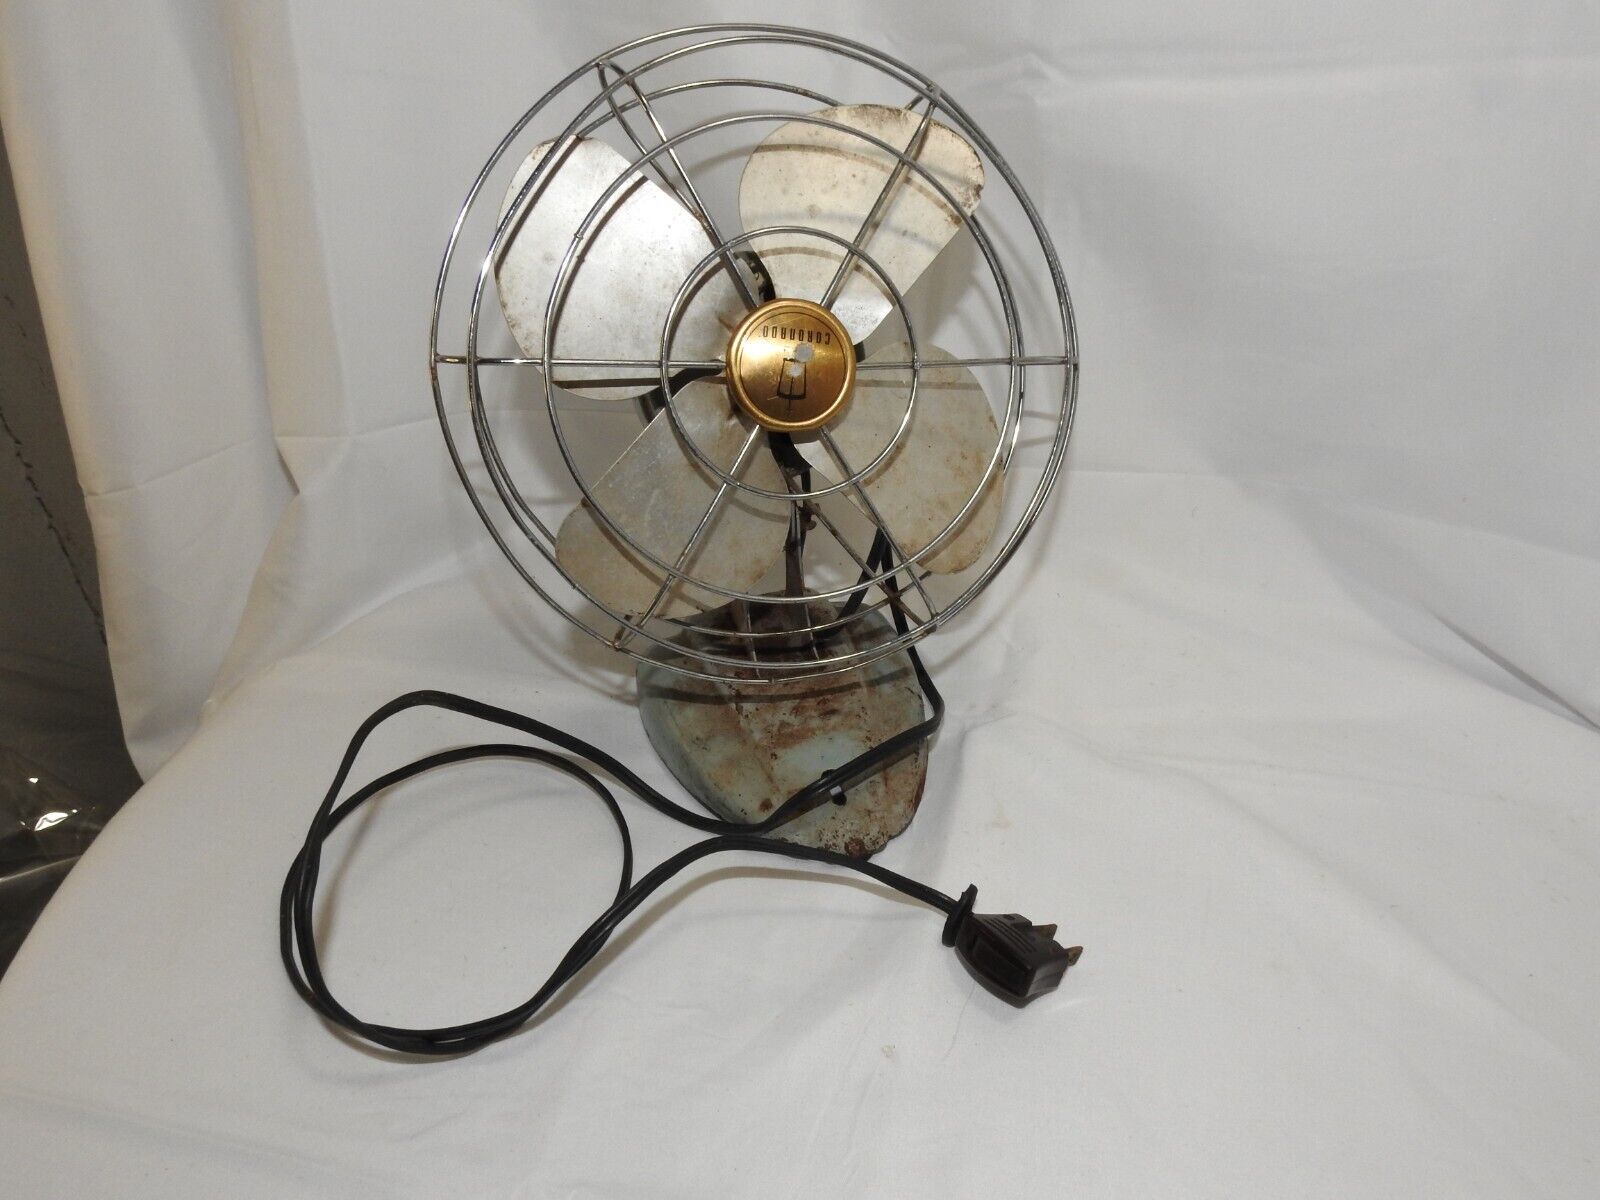 Vintage 1950s Coronado Metal Desk Electric Fan Works Great 11” 